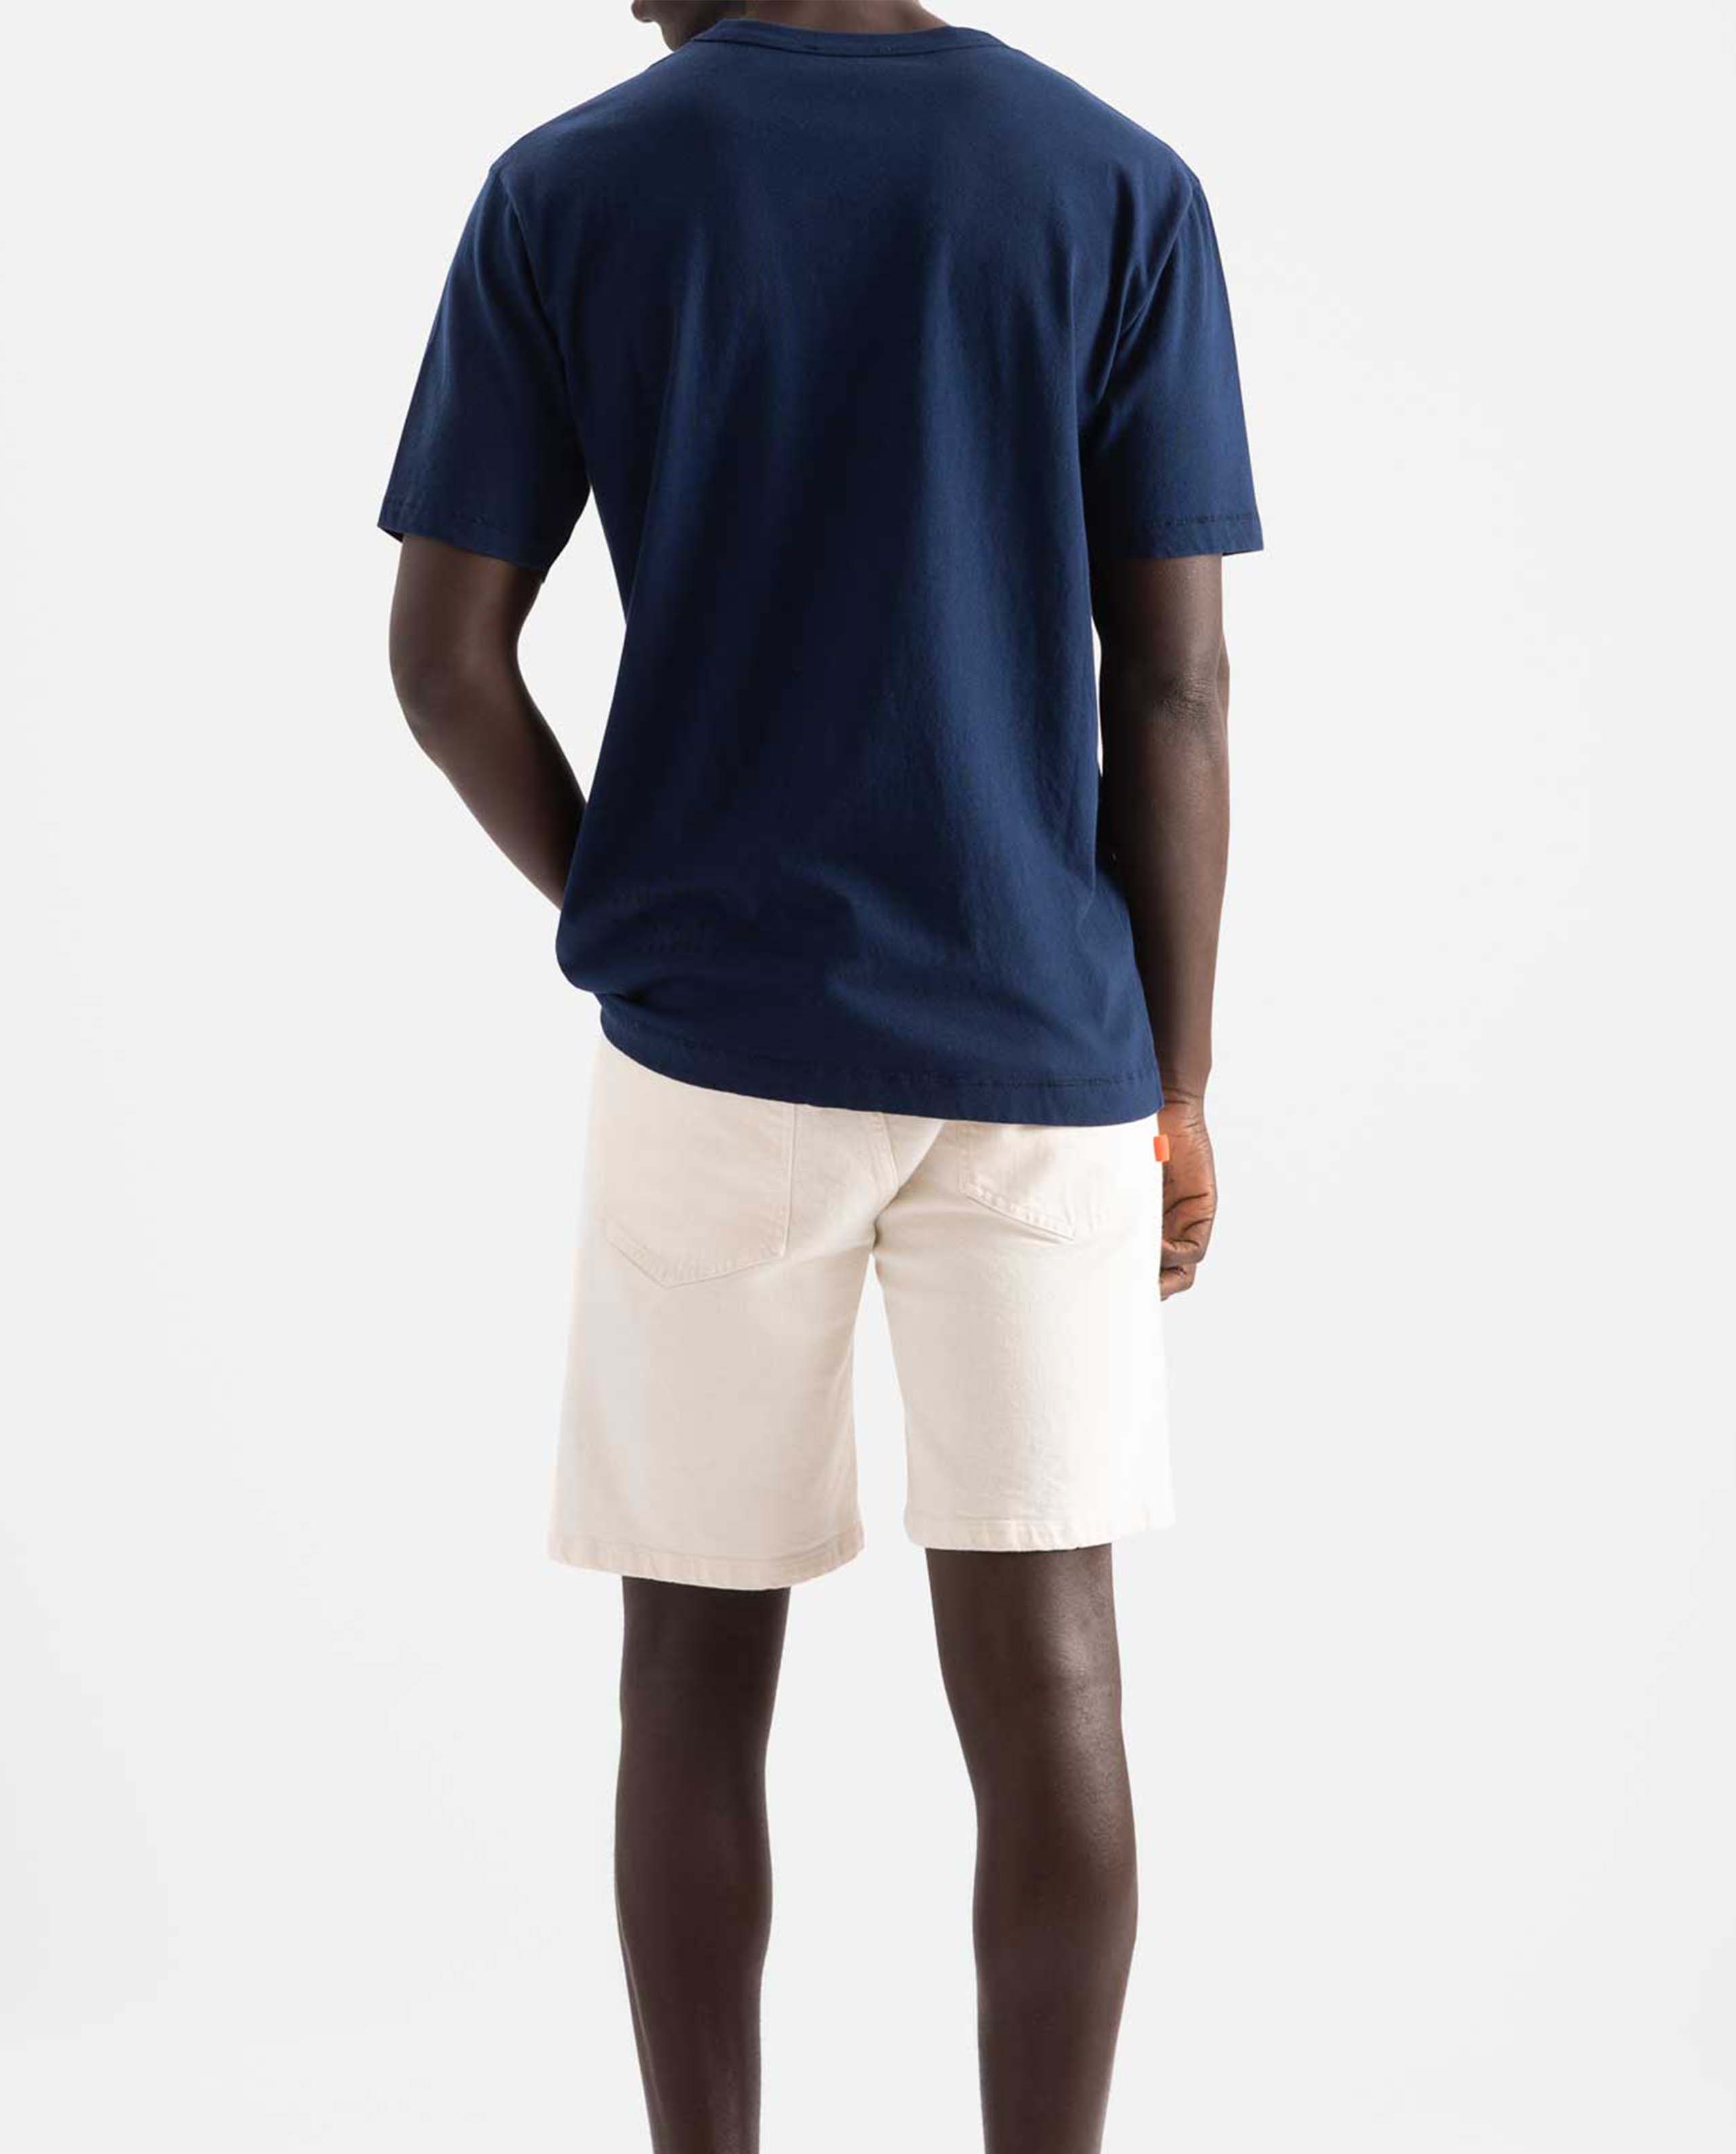 marché commun loreak mendian homme t-shirt coton biologique dot bleu marine